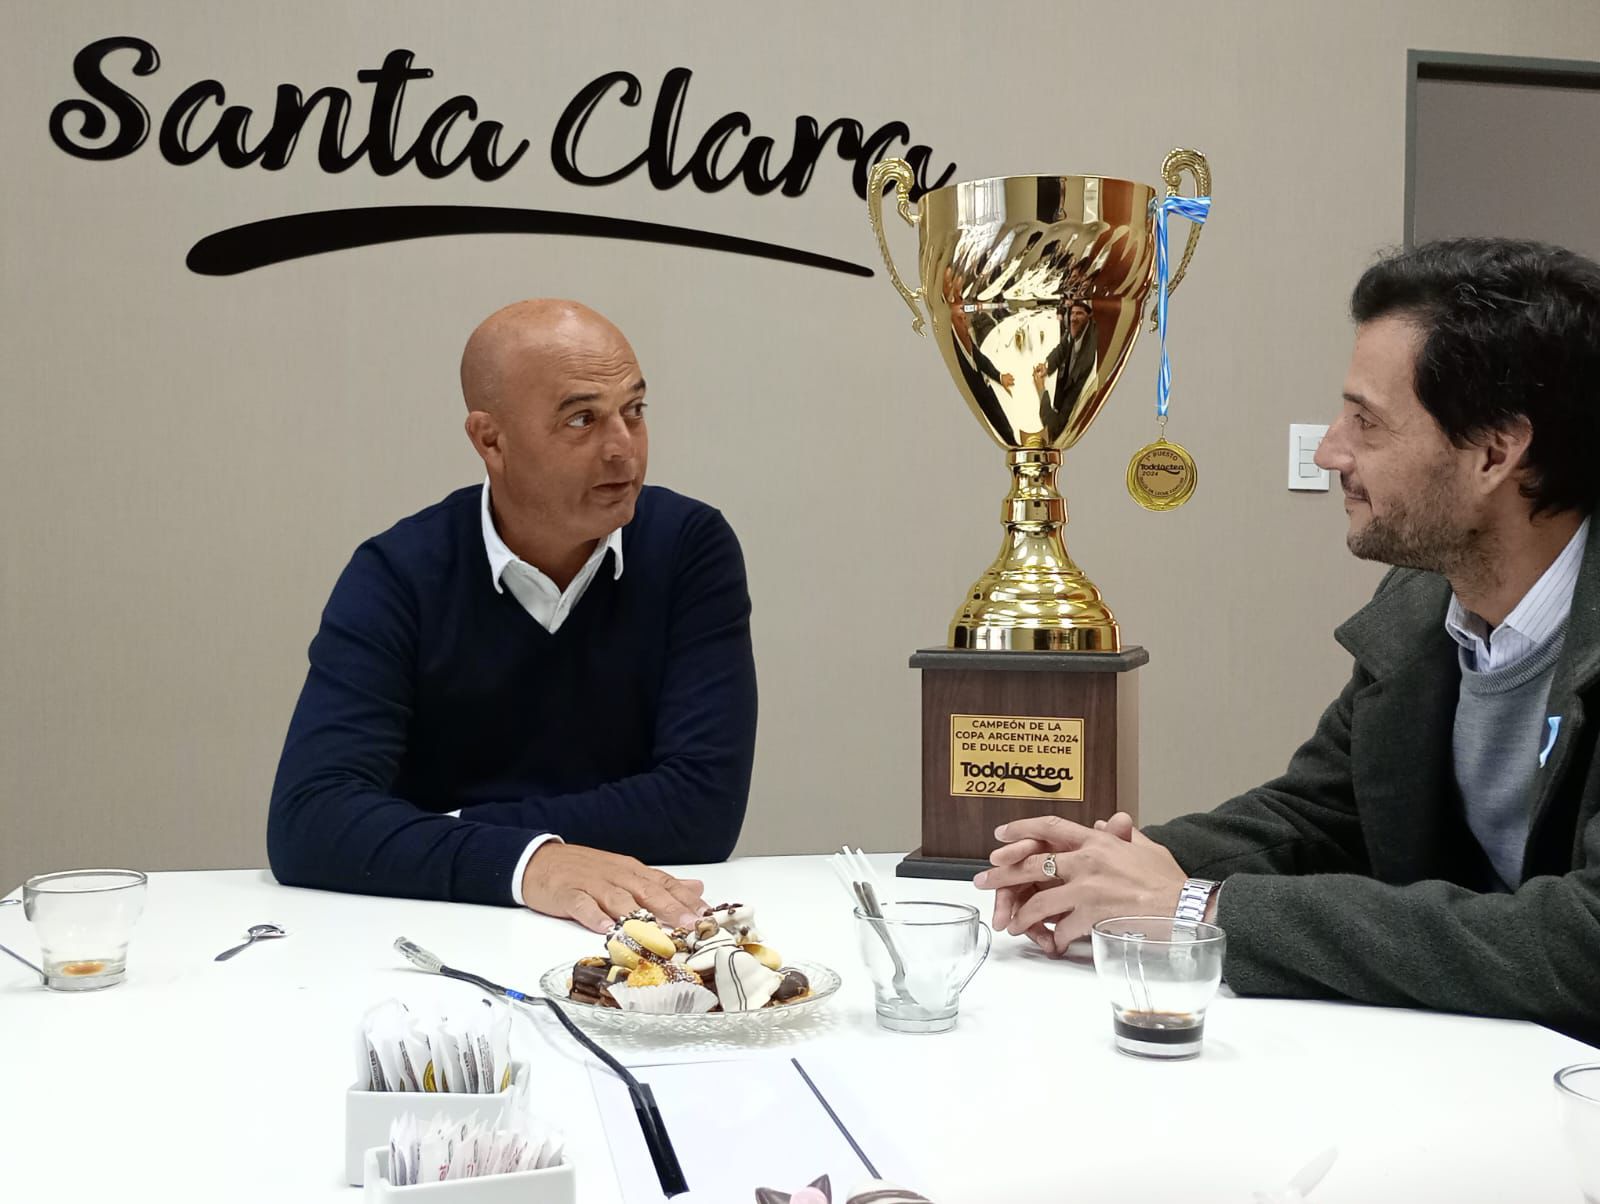 Santa Clara ganó la Copa Argentina al mejor dulce de leche